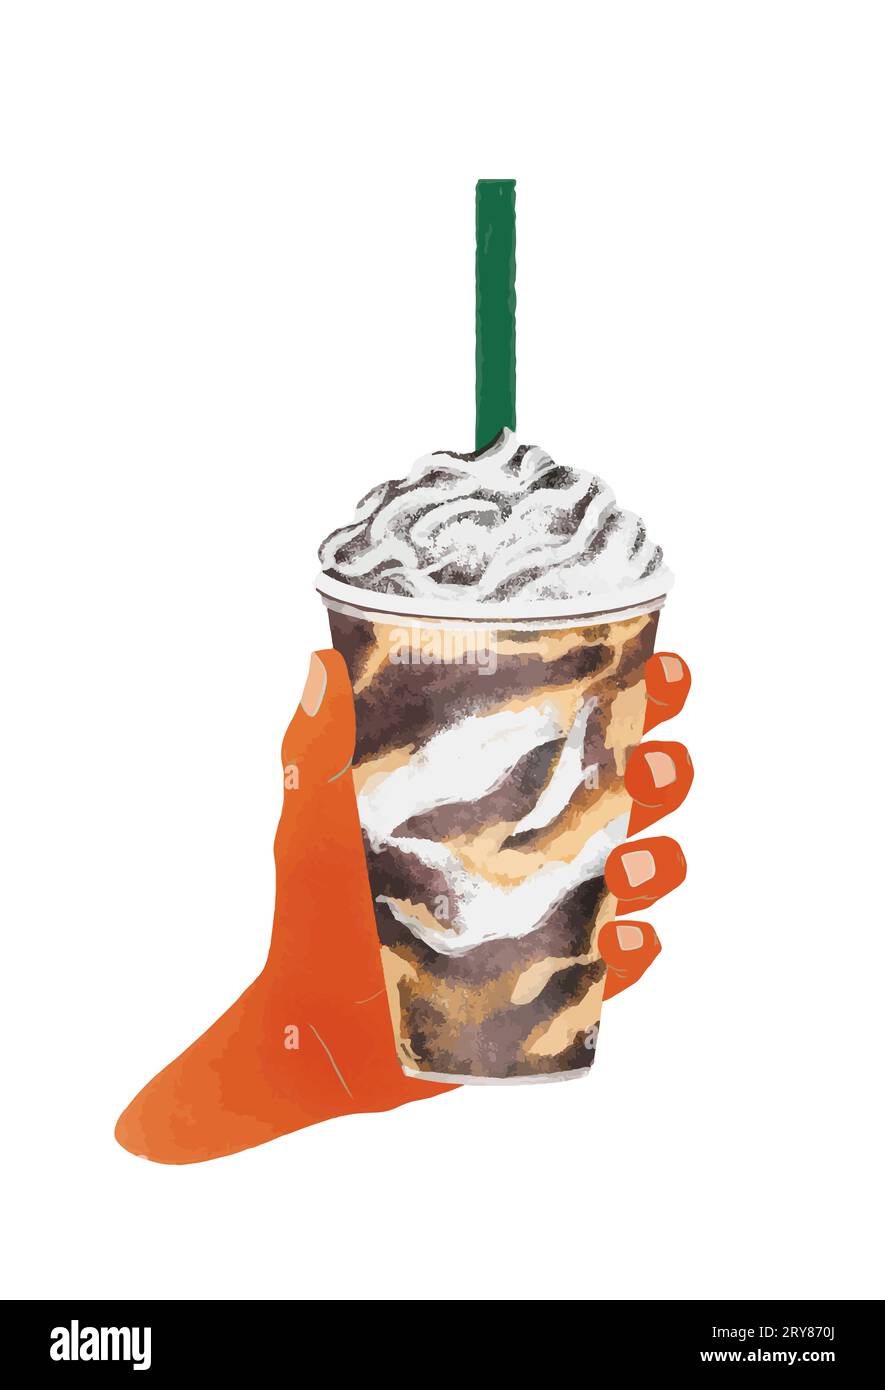 Ilustración vectorial. Mano sosteniendo vaso de frappuccino o café helado con crema y chocolate. Llevar la taza aislada sobre fondo blanco Foto de stock